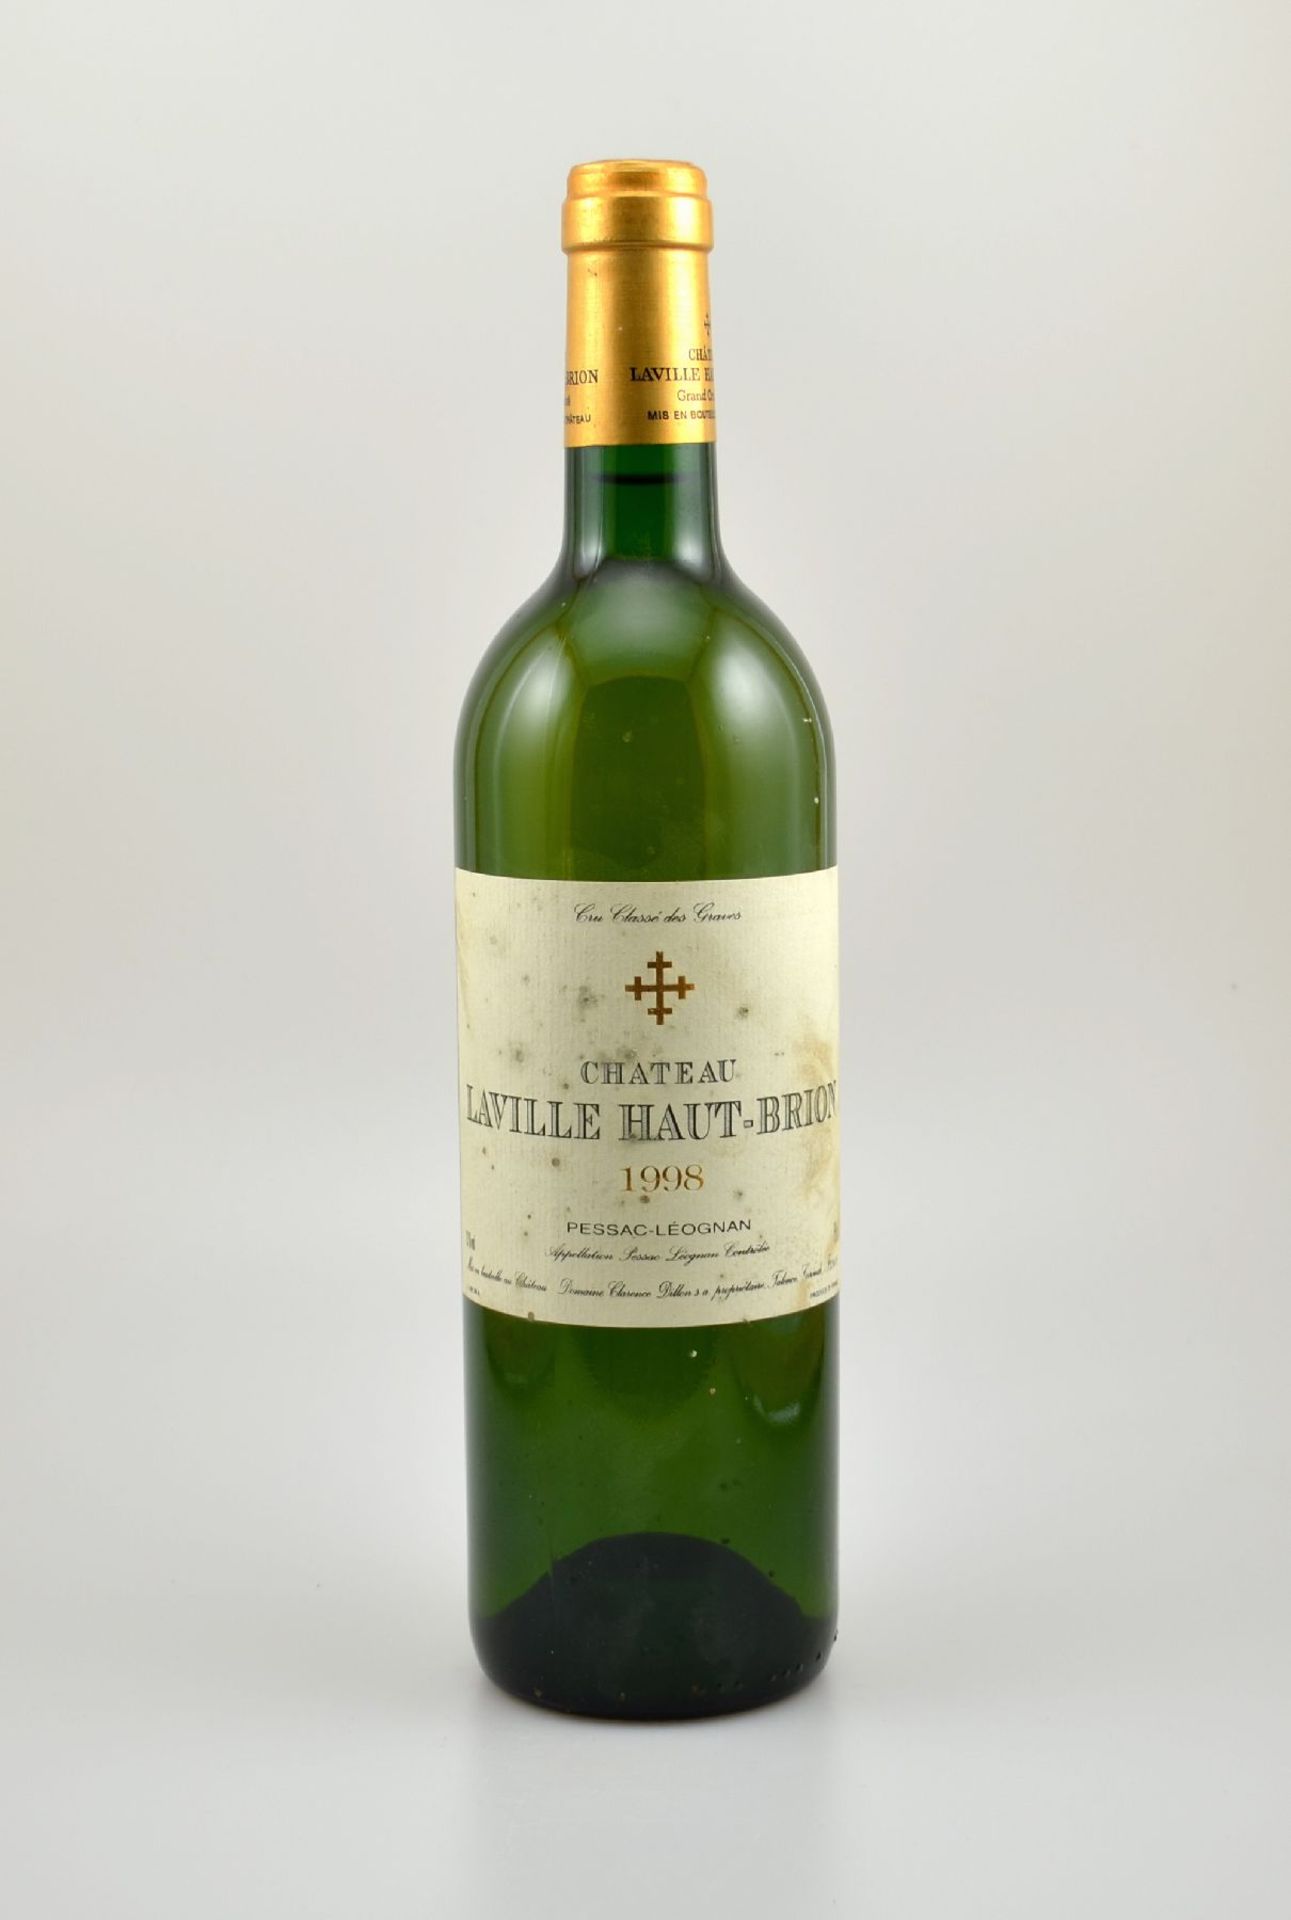 1 Flasche 1998 Chateau Laville Haut-Brion Blanc, Pessac-Leognan, 75 cl, 13 % Vol., Füllstand: into